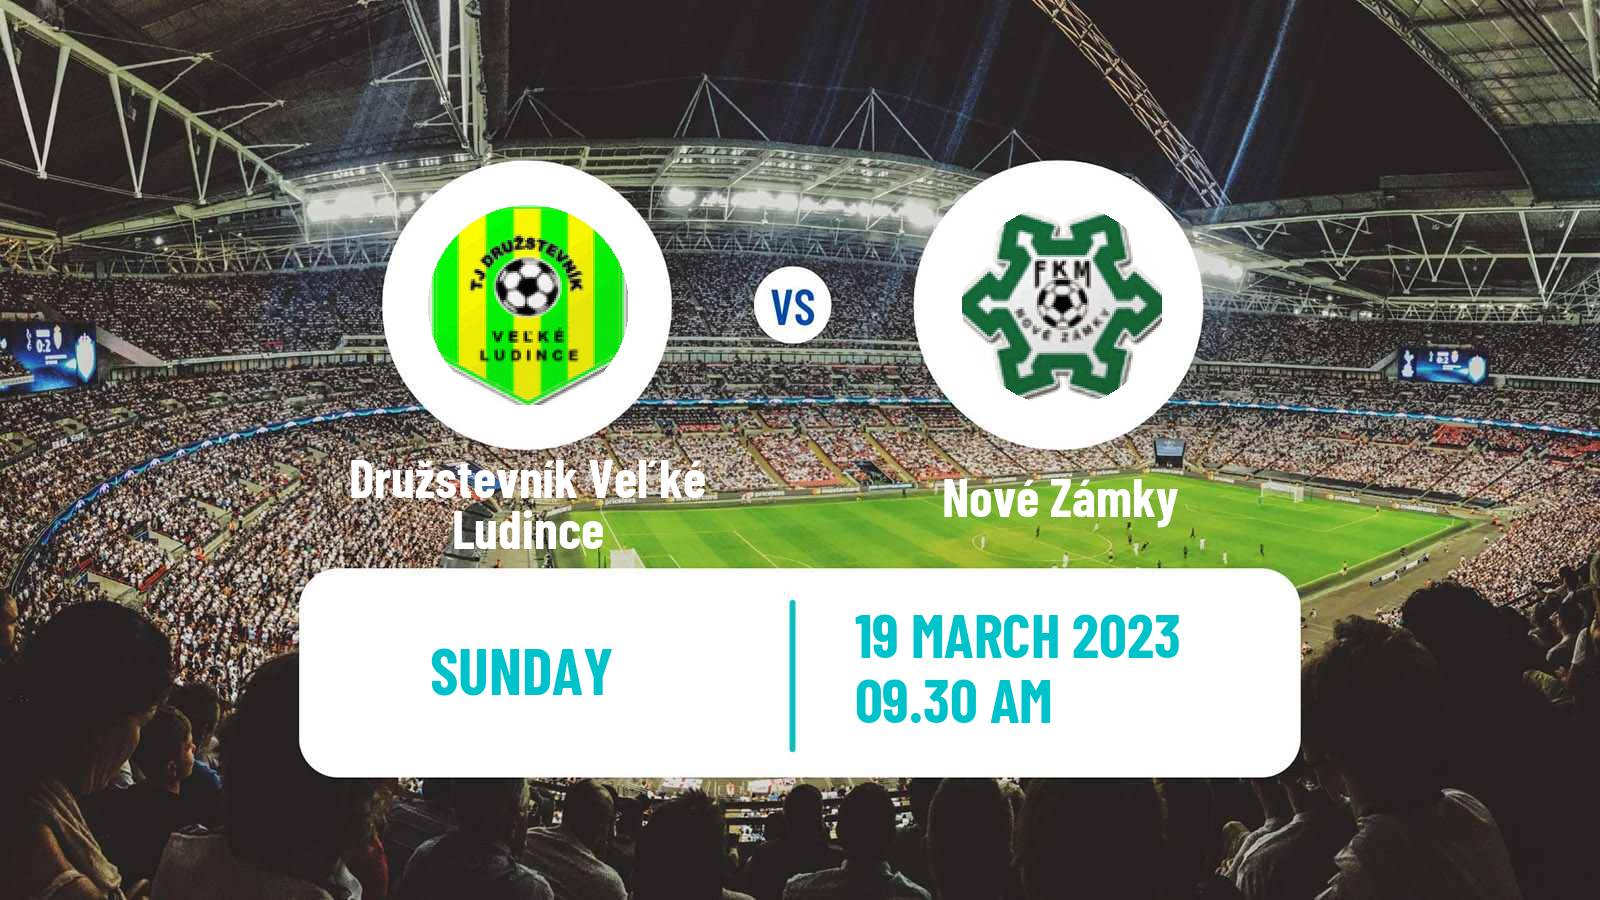 Soccer Slovak 3 Liga West Družstevník Veľké Ludince - Nové Zámky